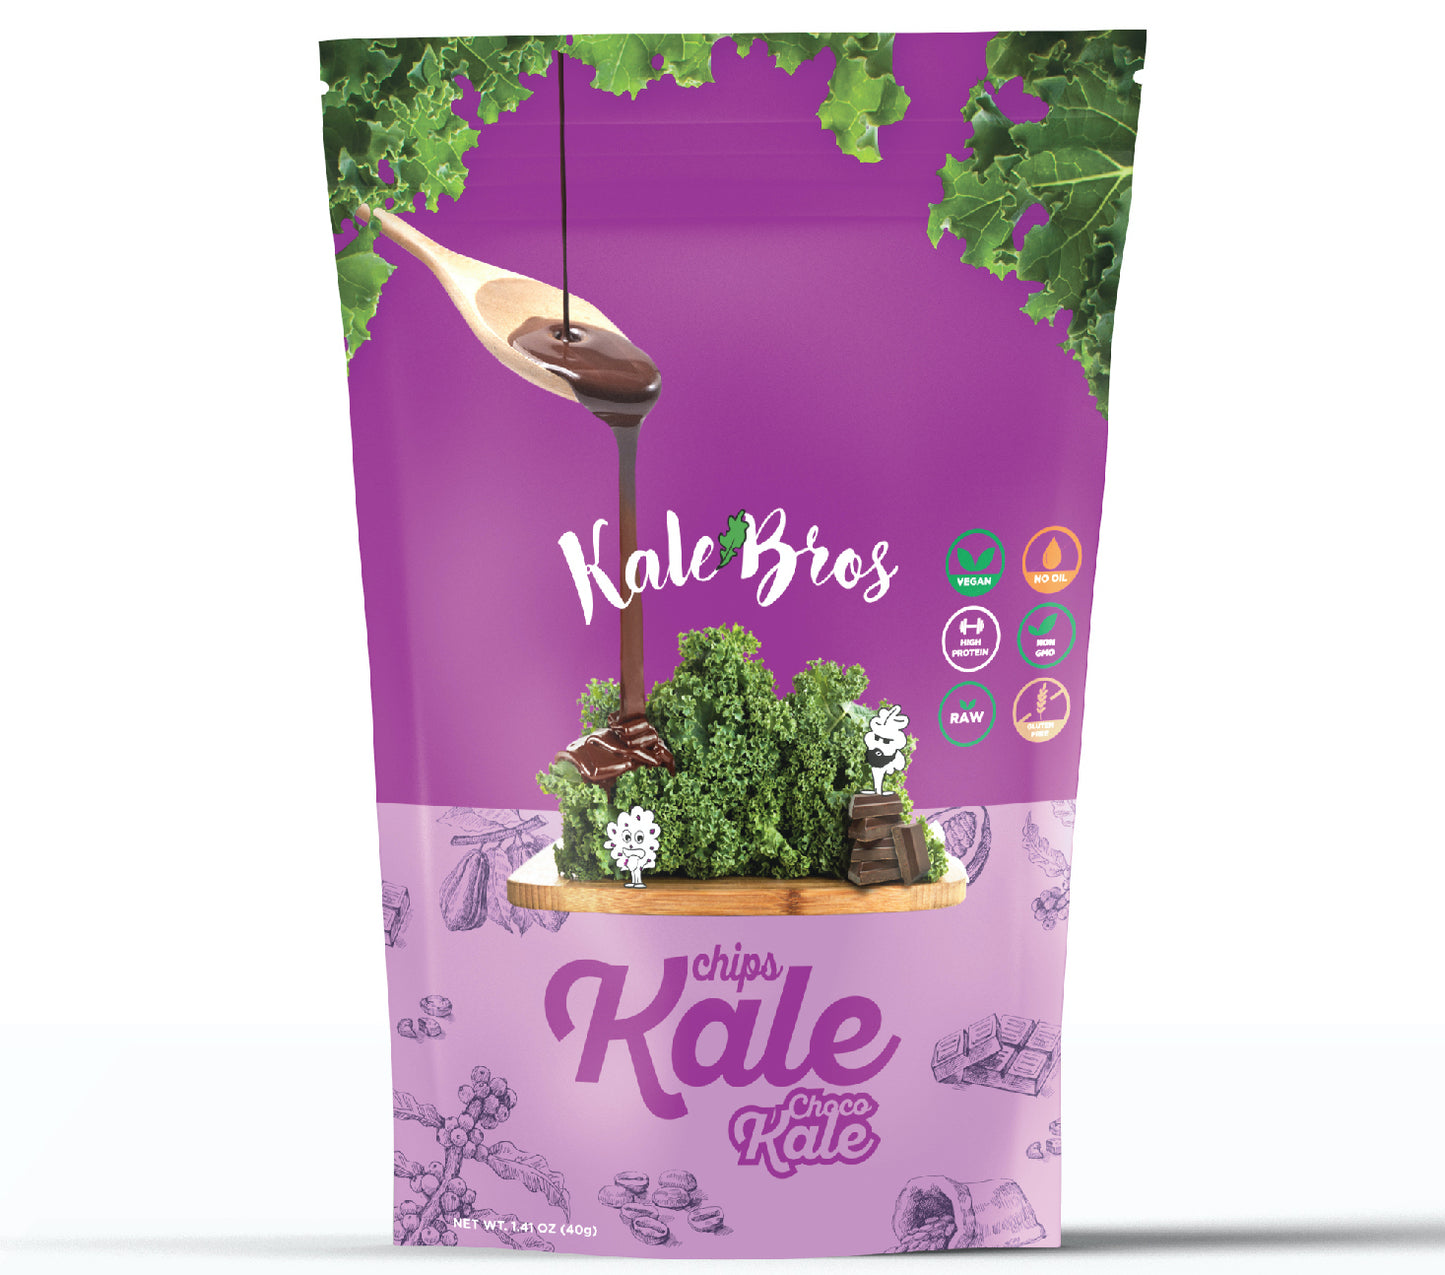 Choco Kale - Kale Bros